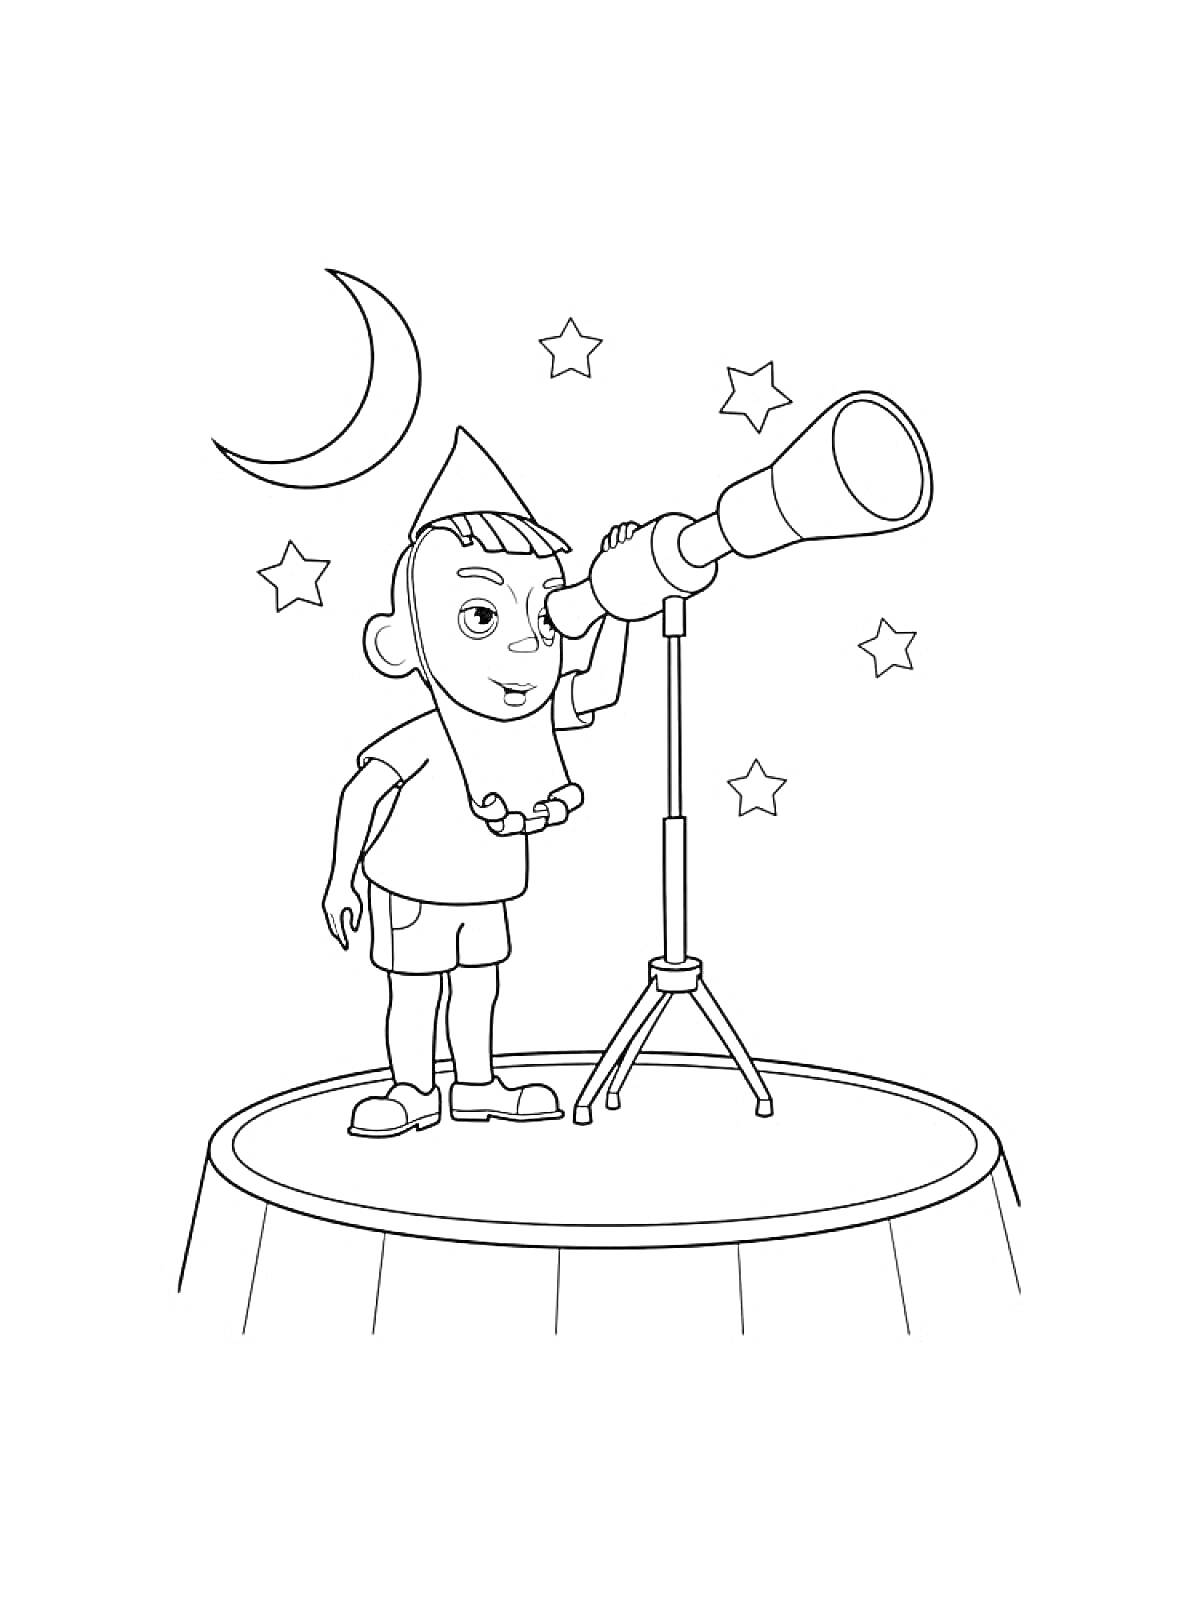 Раскраска Ребенок в колпаке смотрит в телескоп ночью на луне с пятью звездами на фоне